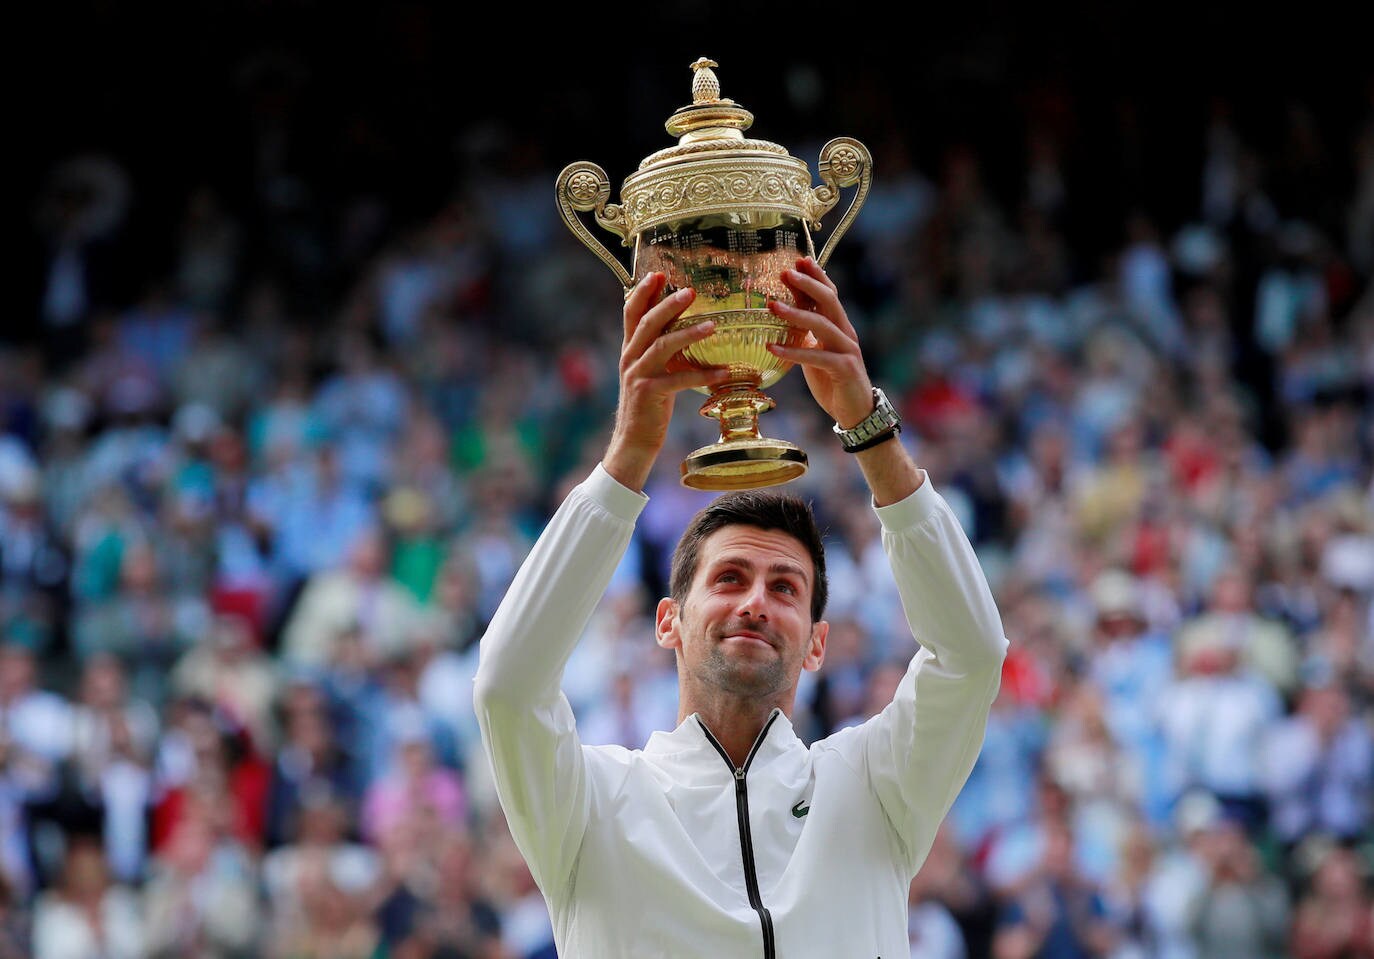 Con el trofeo de Wimbledon 2019 que ganó al imponerse en la final a Federer.